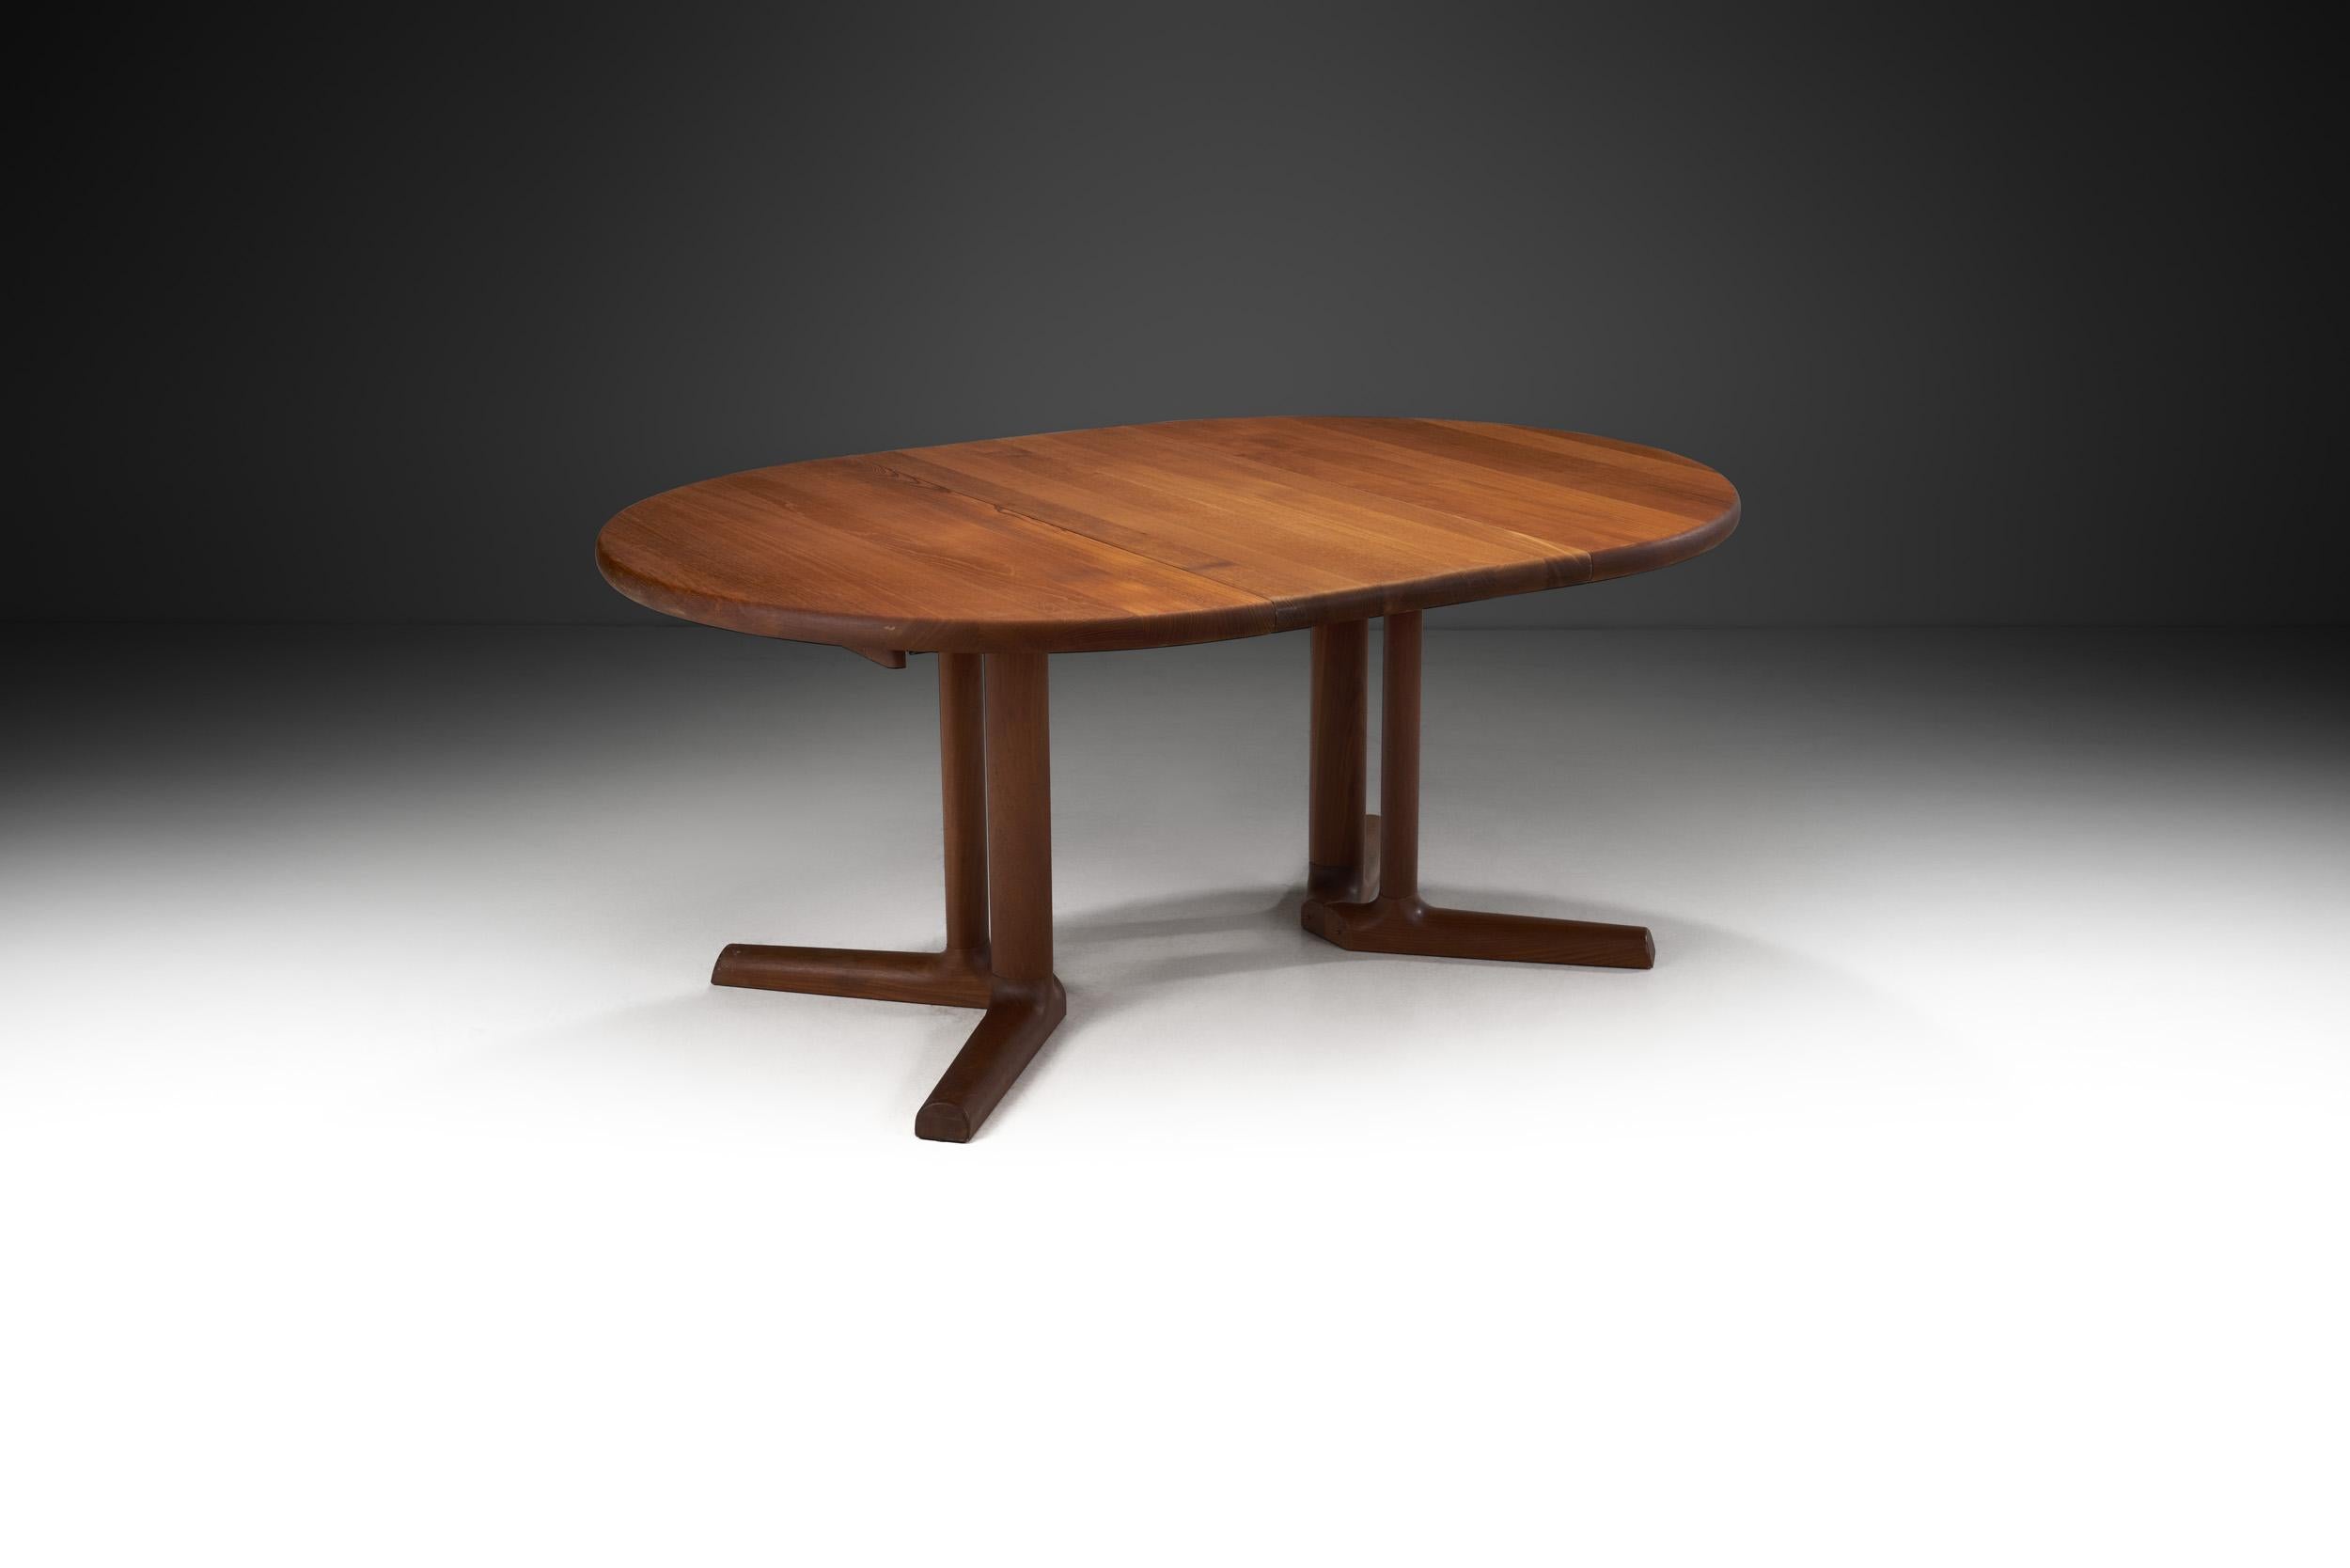 Les meubles fabriqués par la société danoise Dyrlund sont caractérisés par des bois précieux et une finition à la main. Comme le montre cette superbe table en teck massif, l'accent est mis sur le savoir-faire des experts qui travaillent dans le